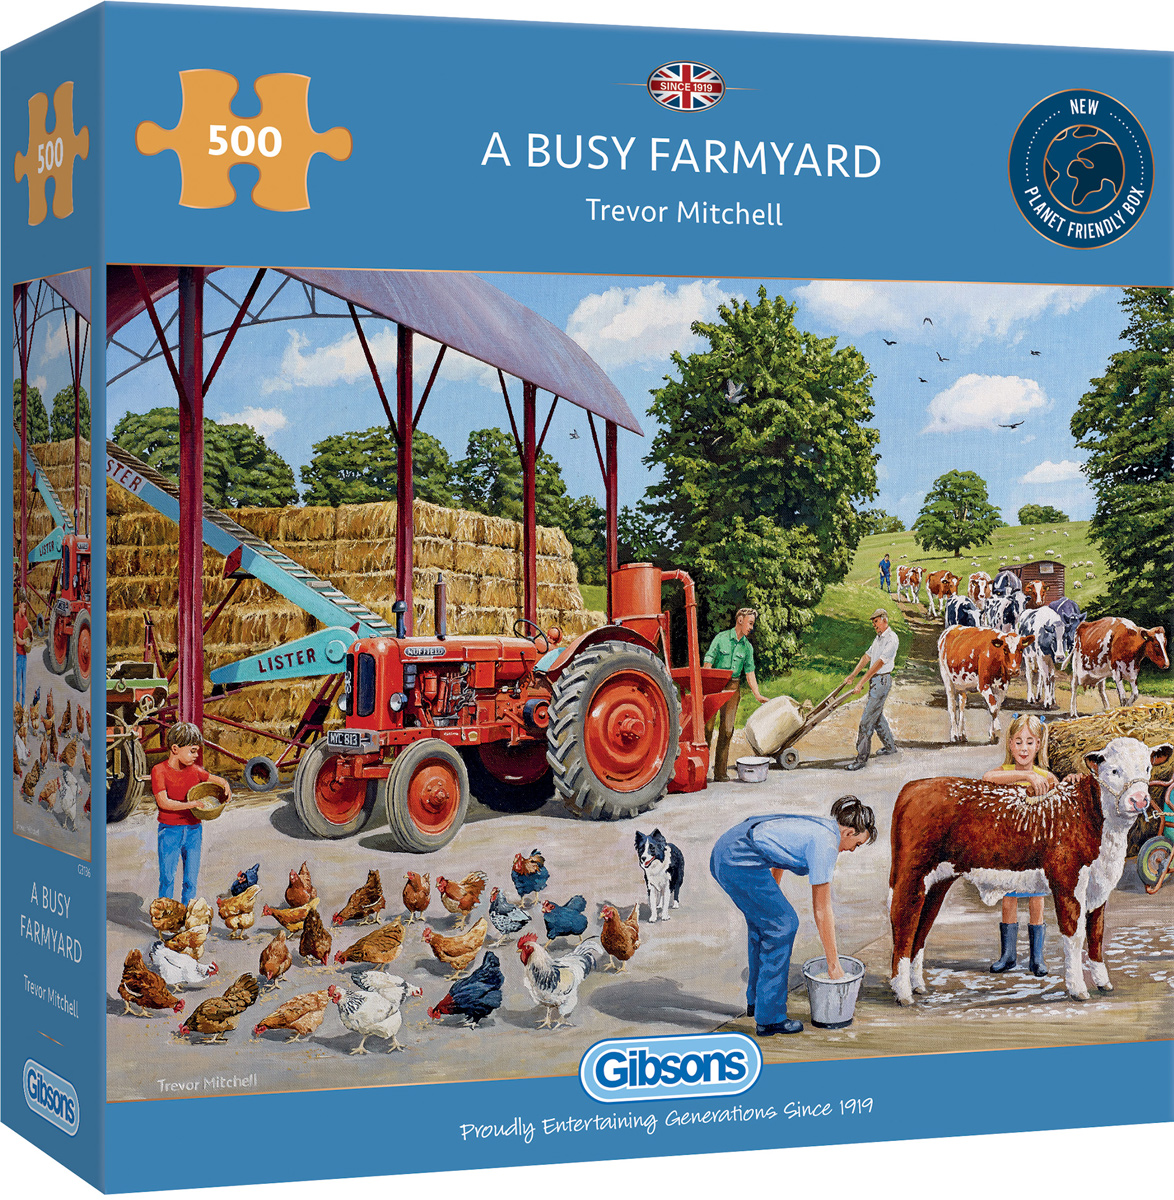 A Busy Farmyard